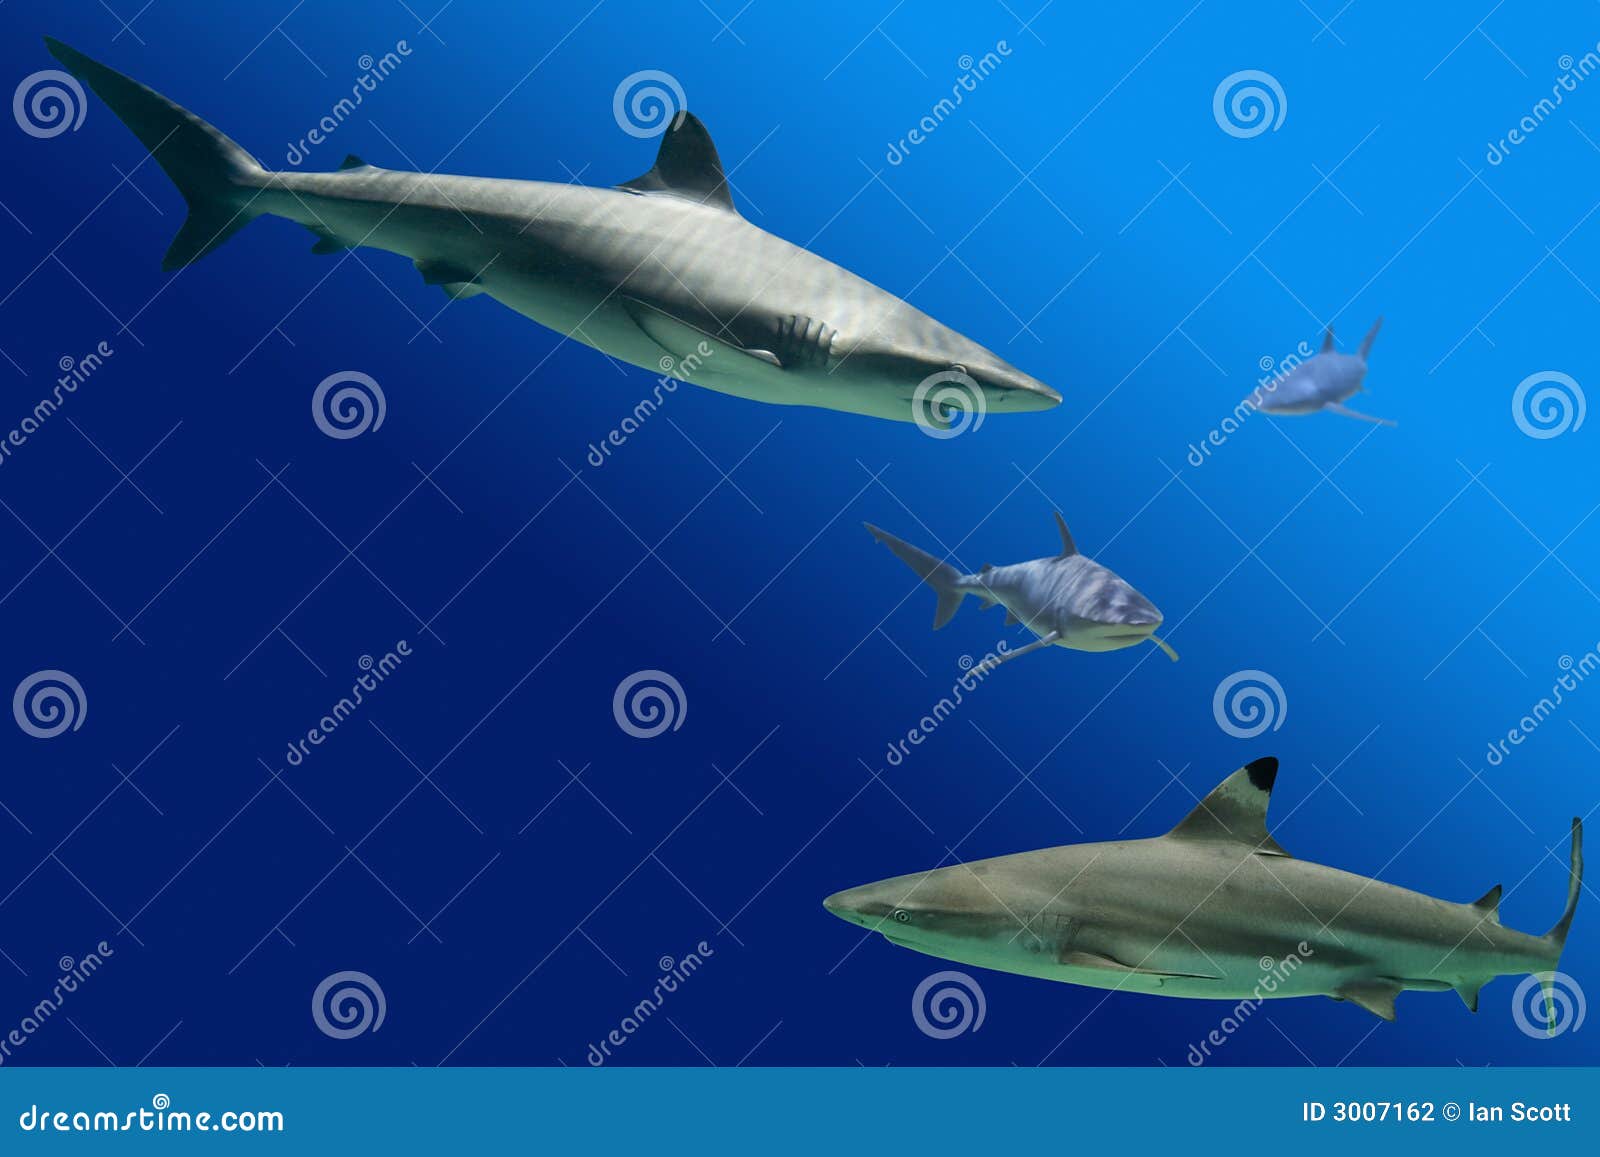 Sharks including Blacktip Reef Shark (Carcharhinus melanopterus) and Grey Reef Shark (Carcharhinus amblyrhynchos)